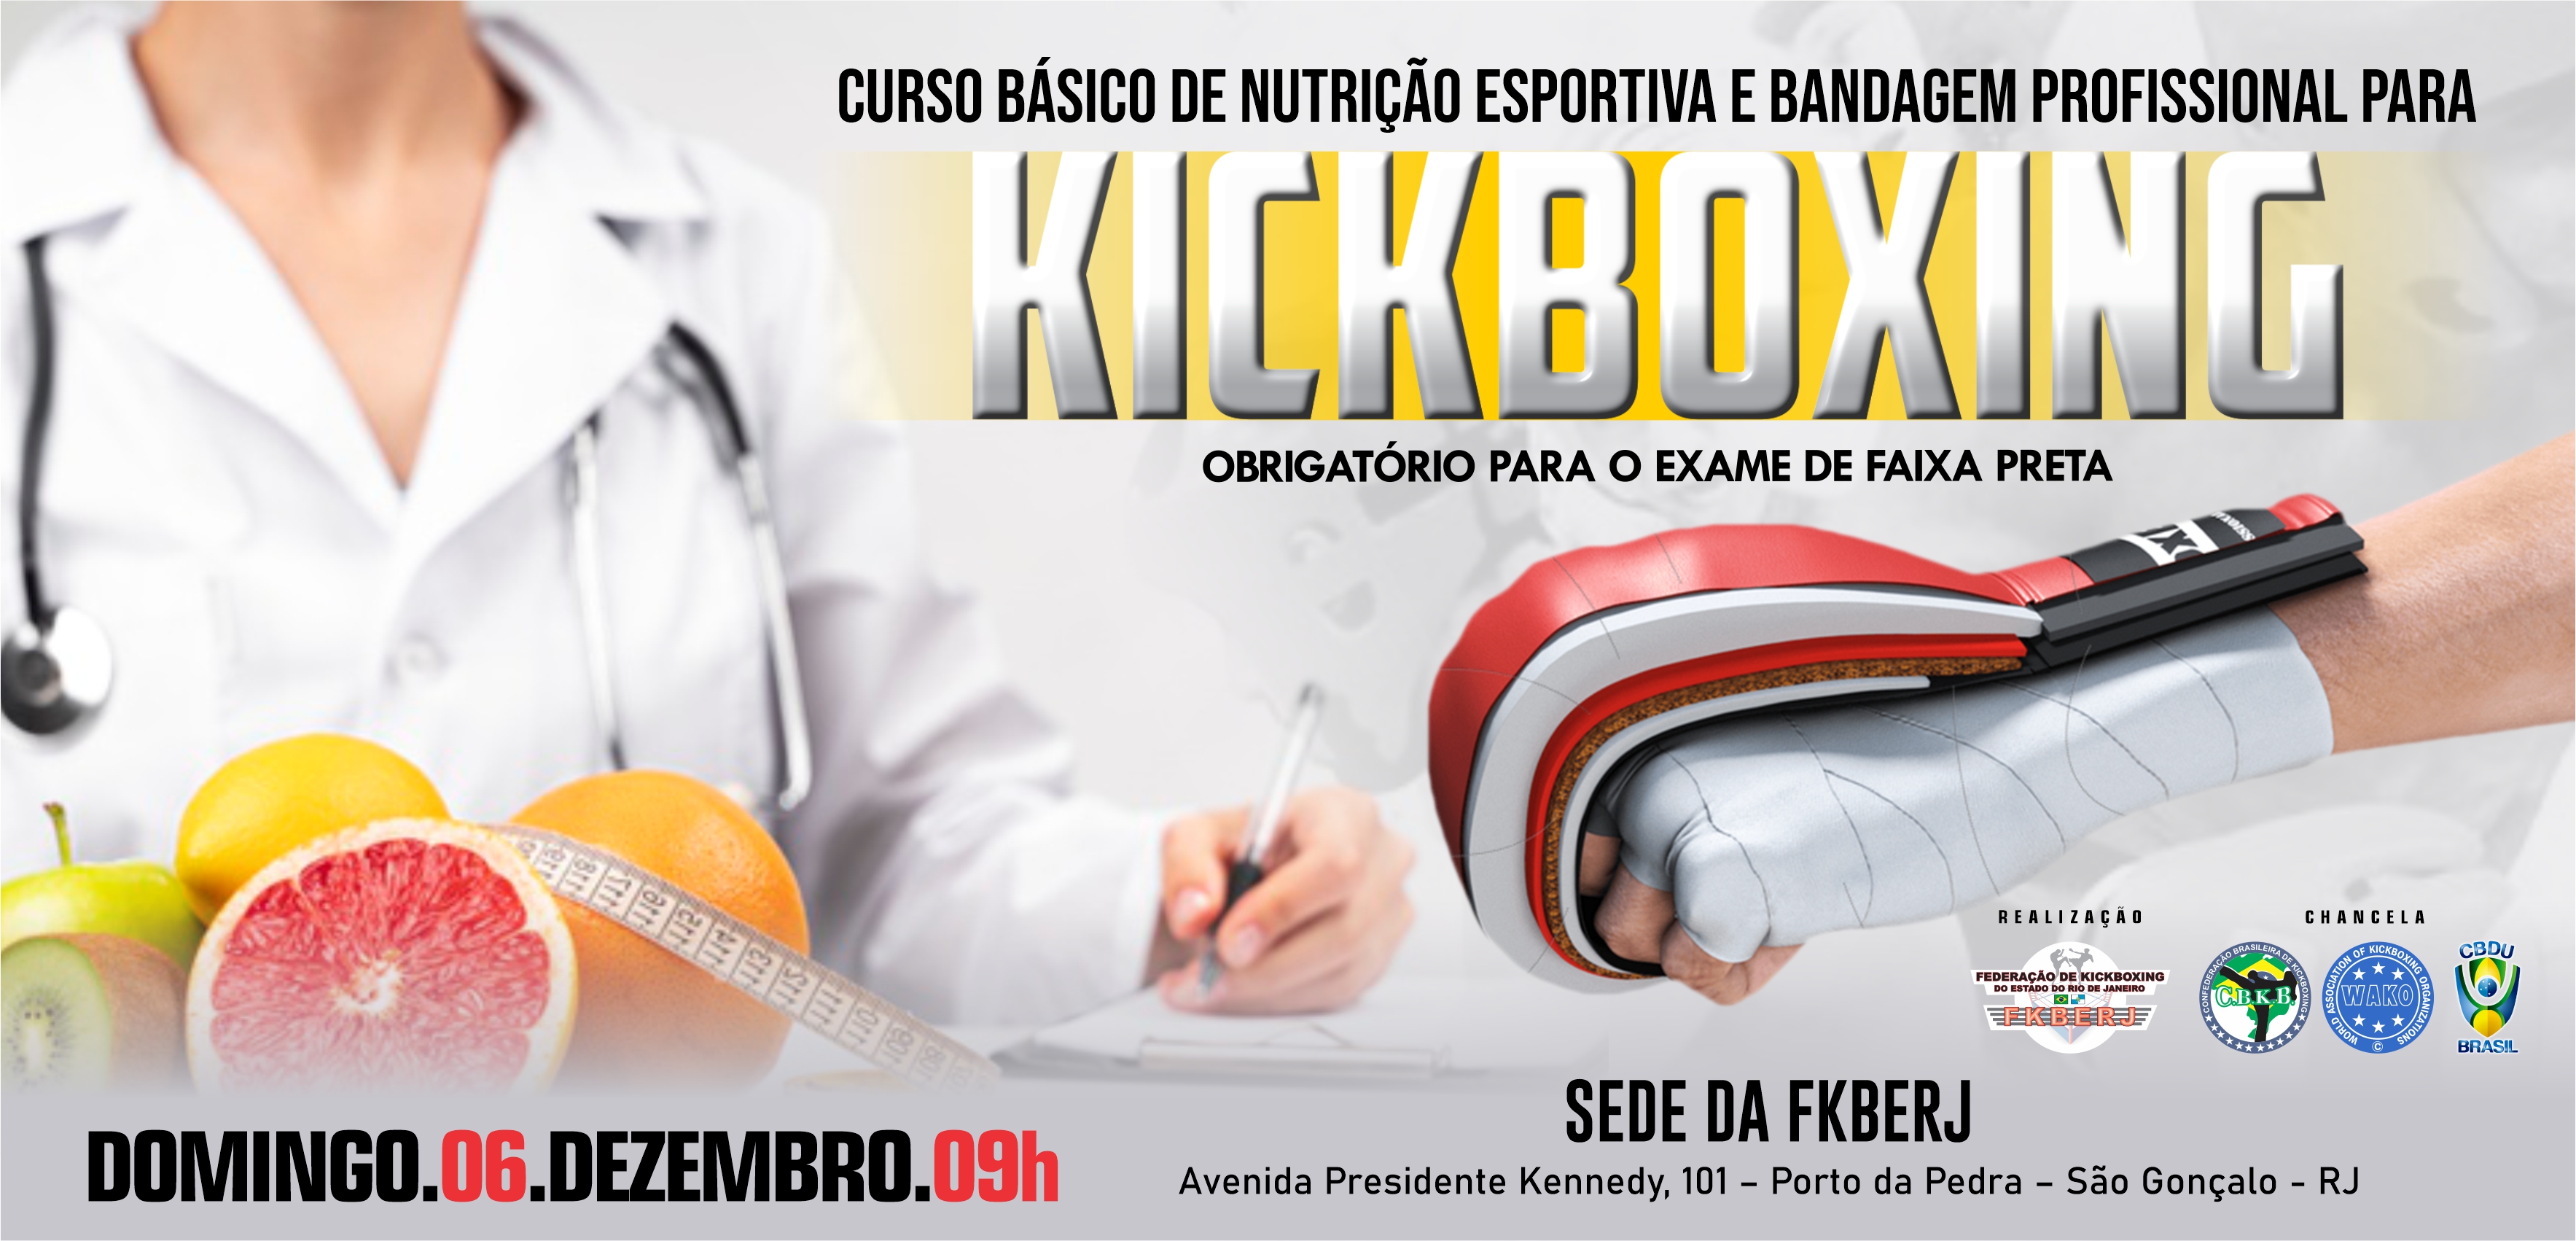 1º Curso Básico de Nutrição Esportiva e colocação de Bandagem Profissional pra Kickboxing 2020